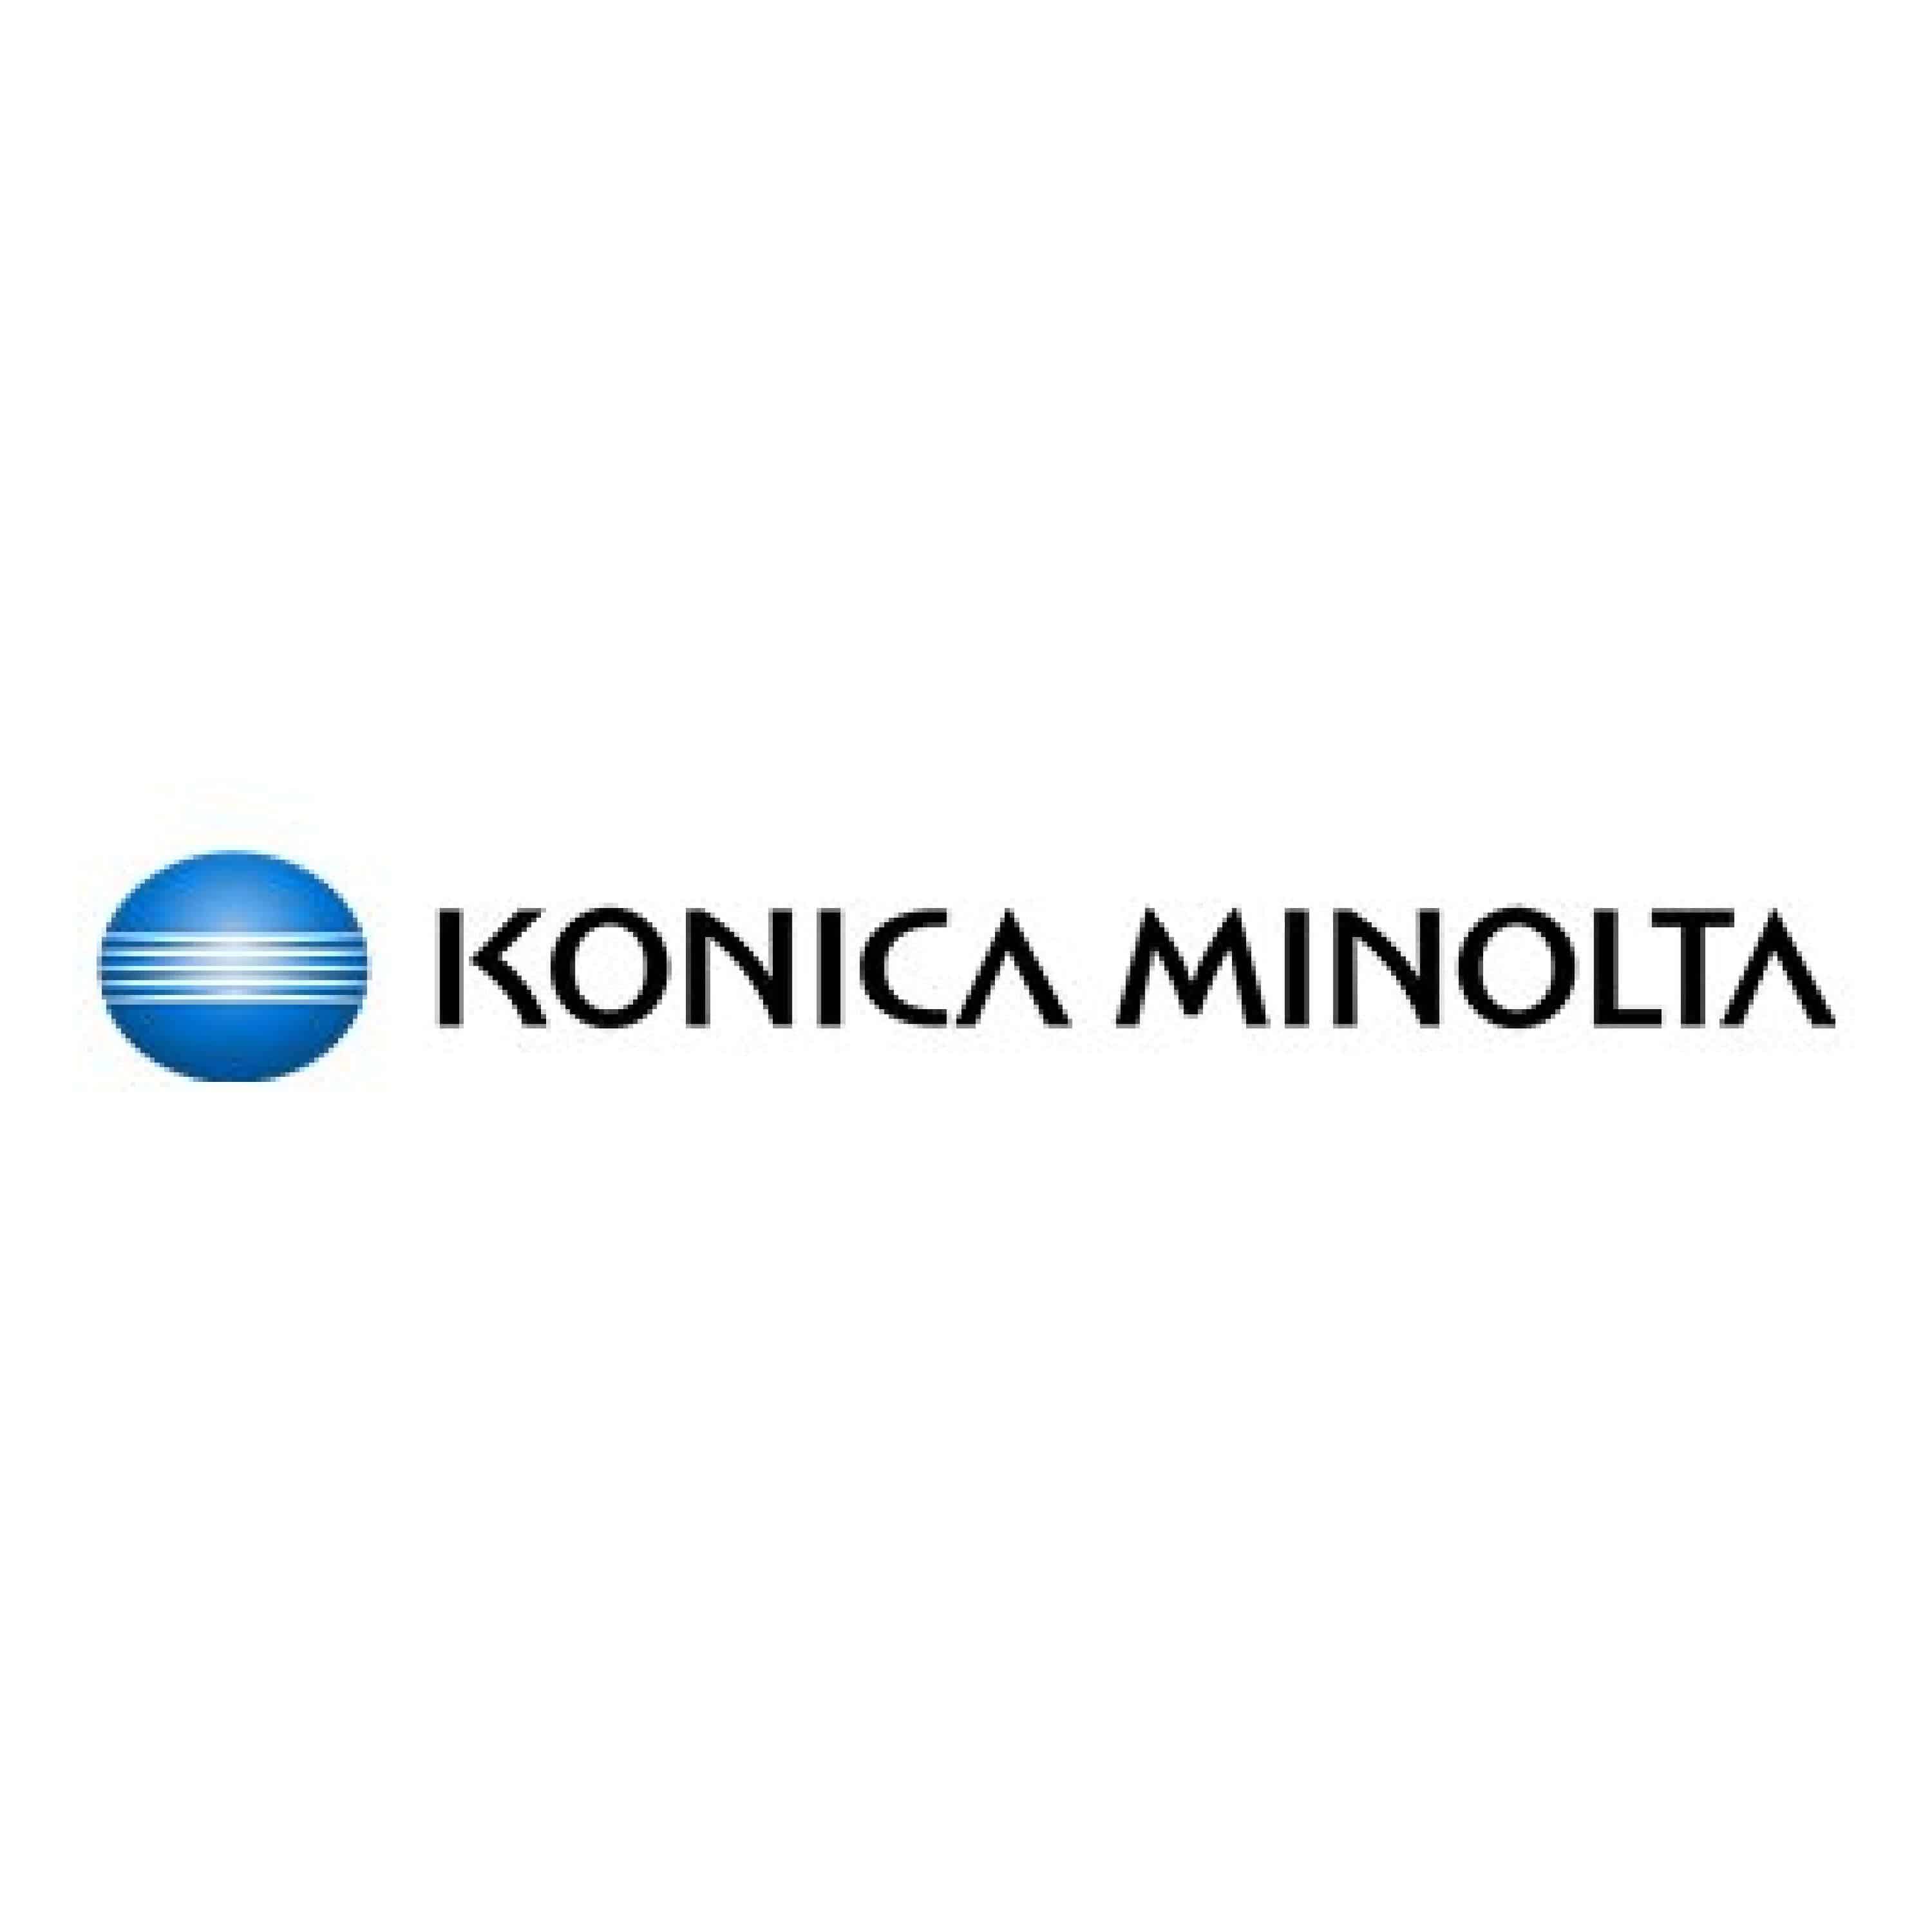 Original Toner Konica Minolta AccurioPrint C 2060 L (A3VX354 / TN-620M) Magenta